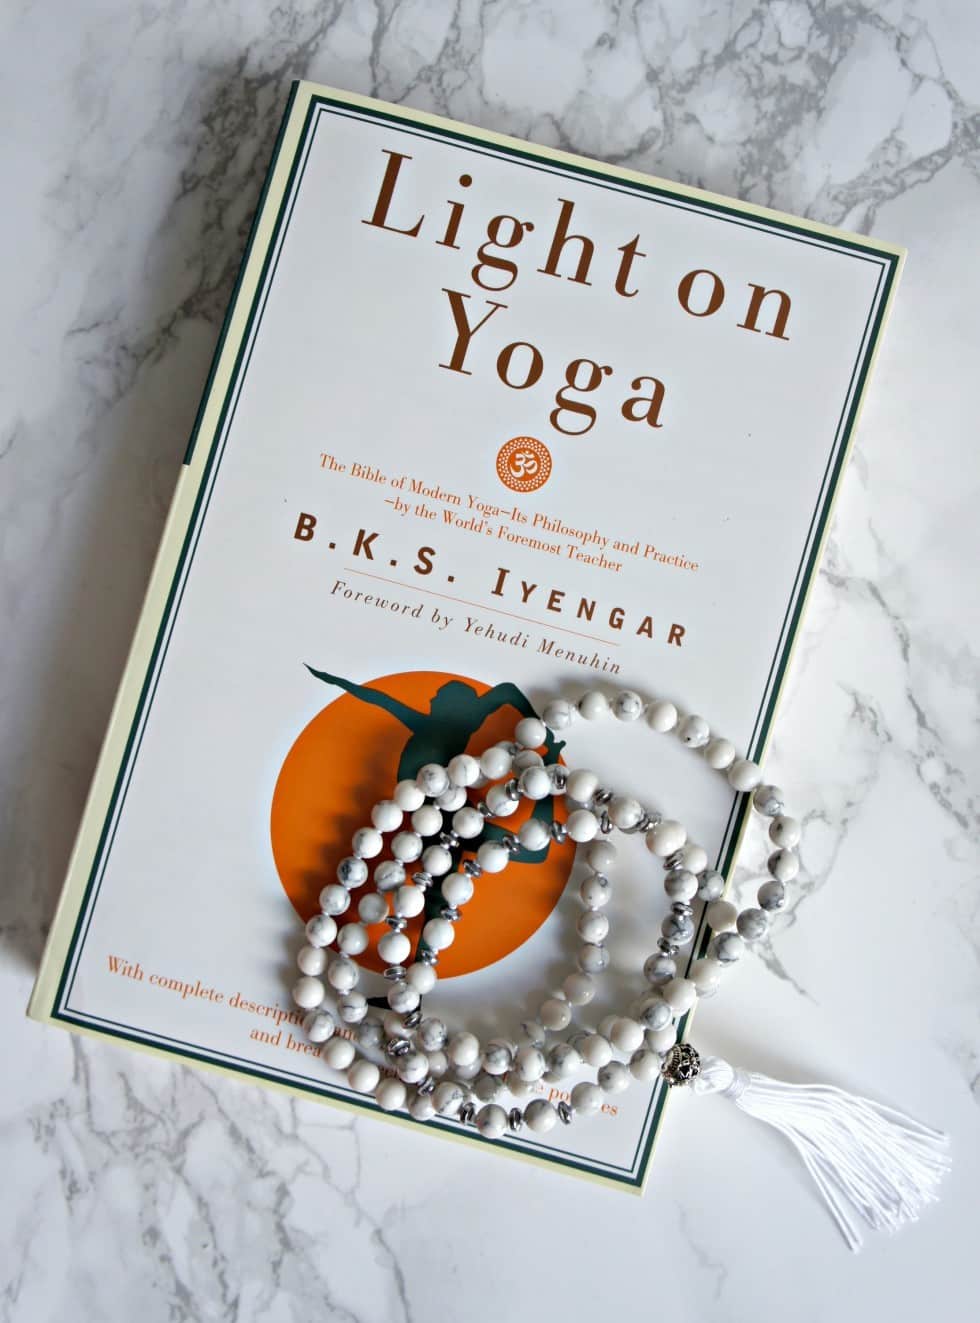 velsignelse Gemme oversætter Light on Yoga - Bliv inspireret på Danmarks største Yogaunivers